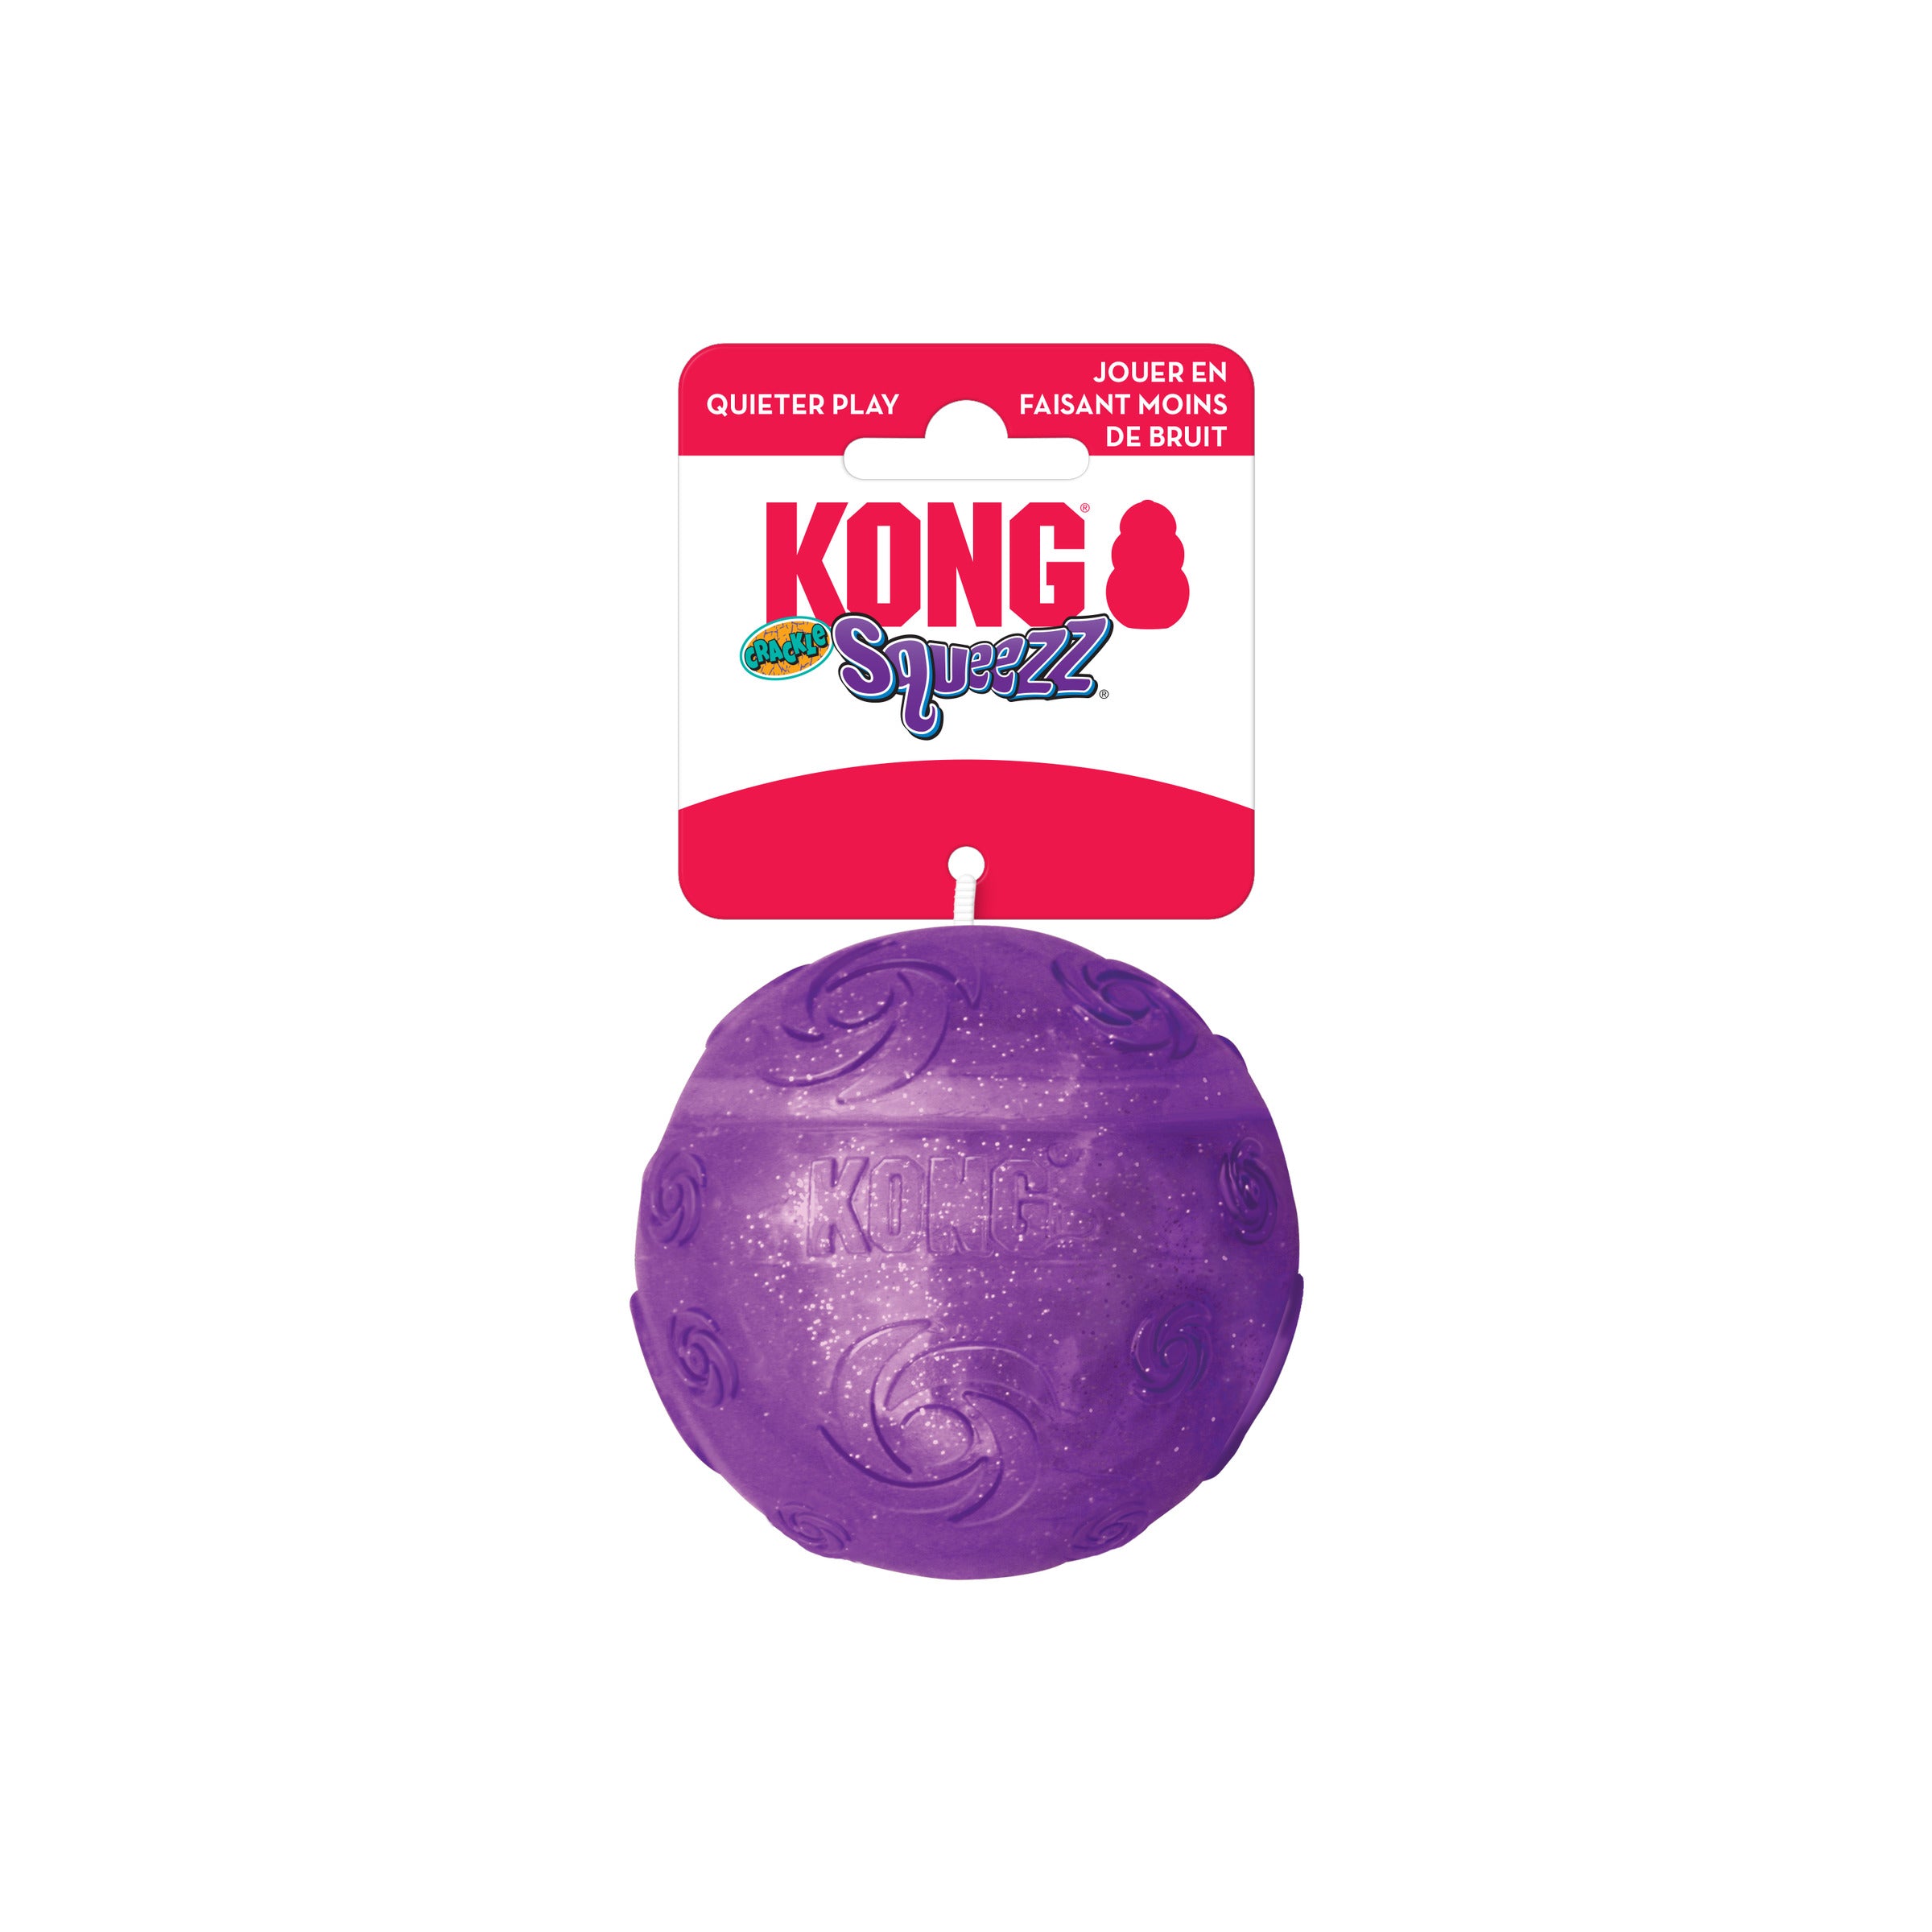 Squeezz Crackle de Kong - Pelota Kong Squeezz